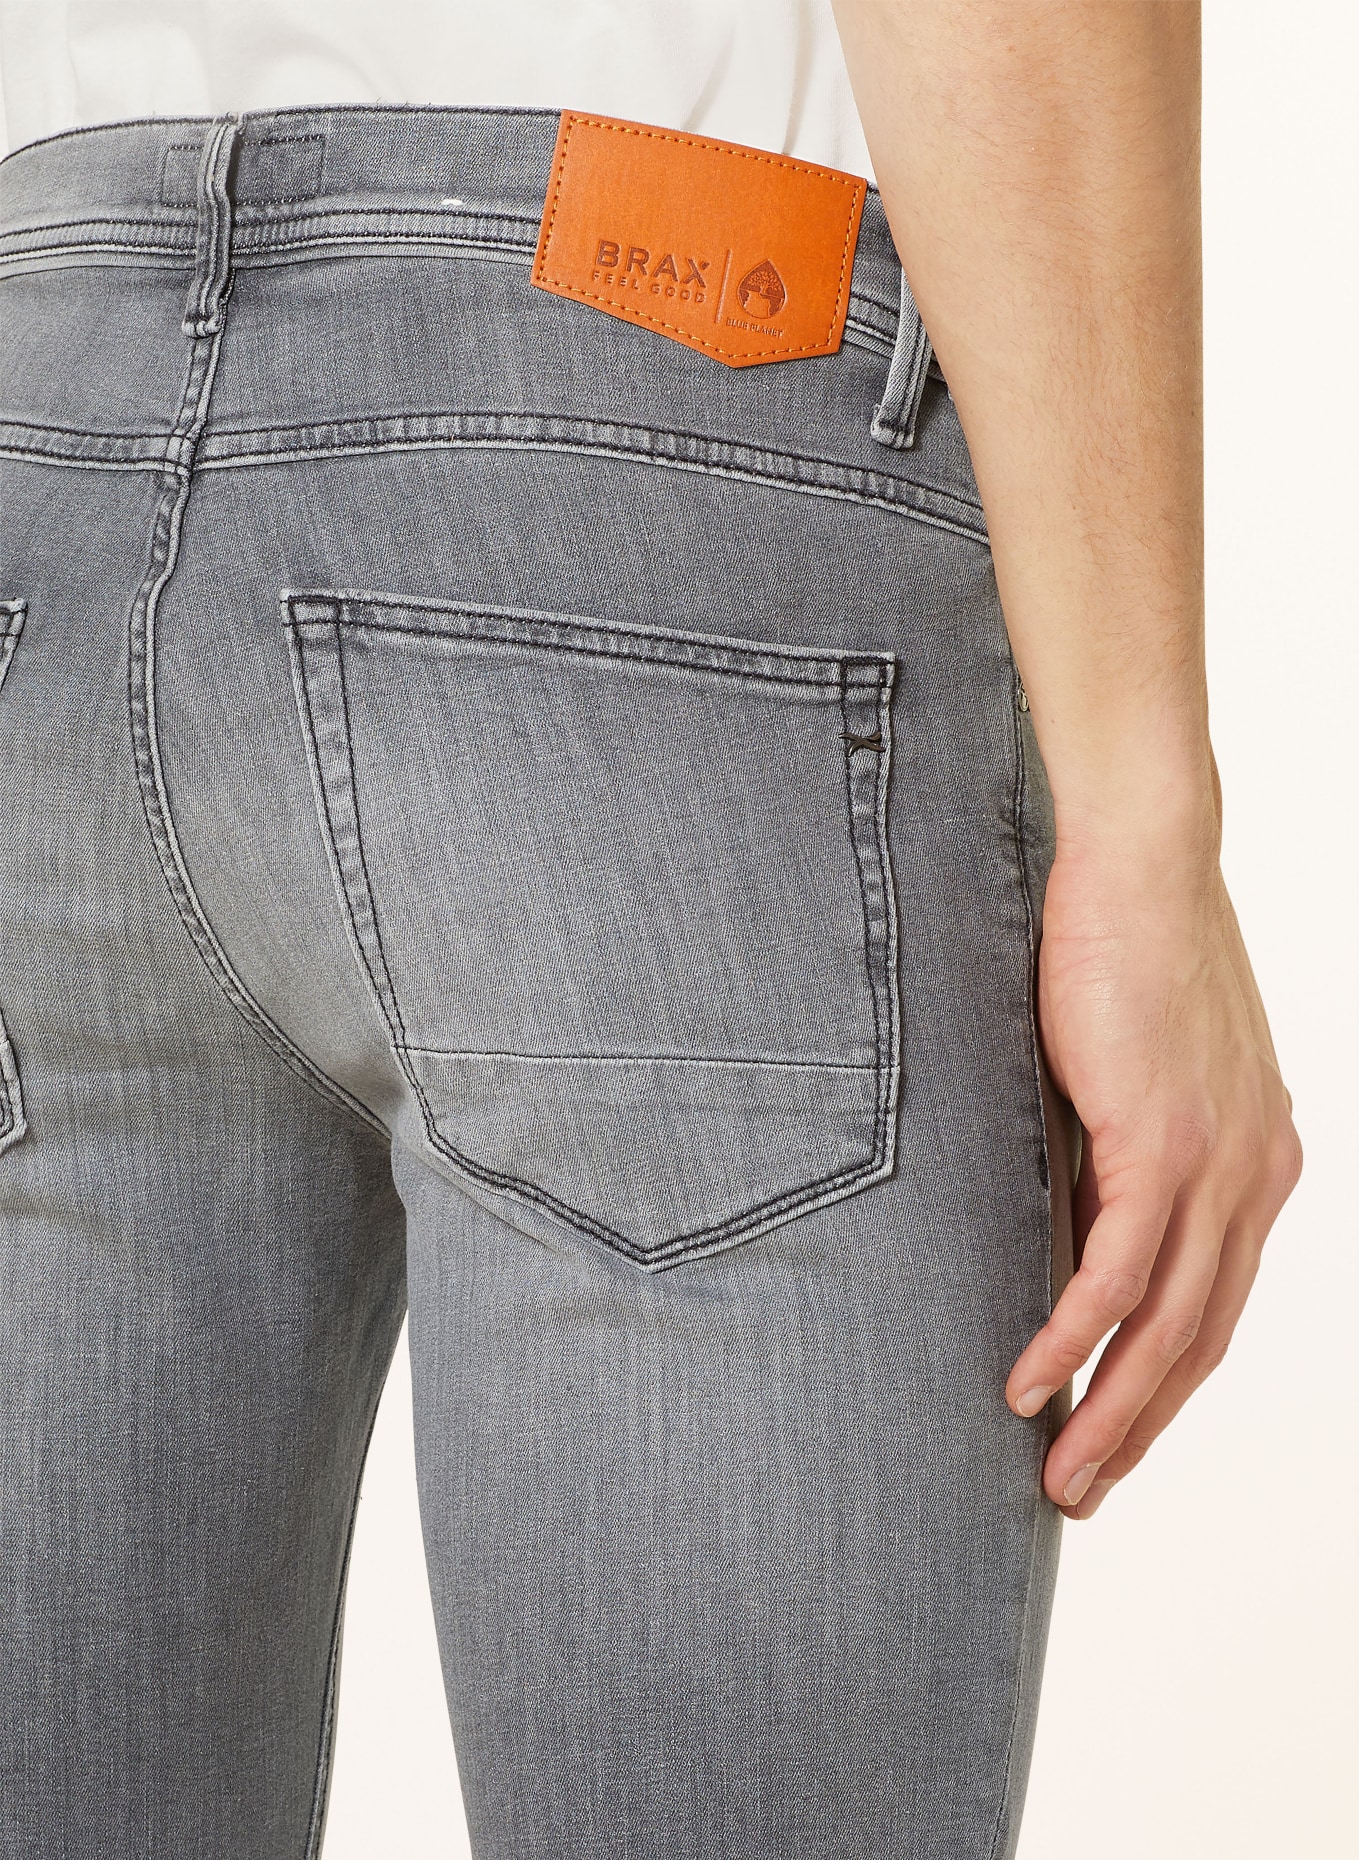 BRAX Jeans CHRIS slim fit, Color: 06 06 (Image 6)